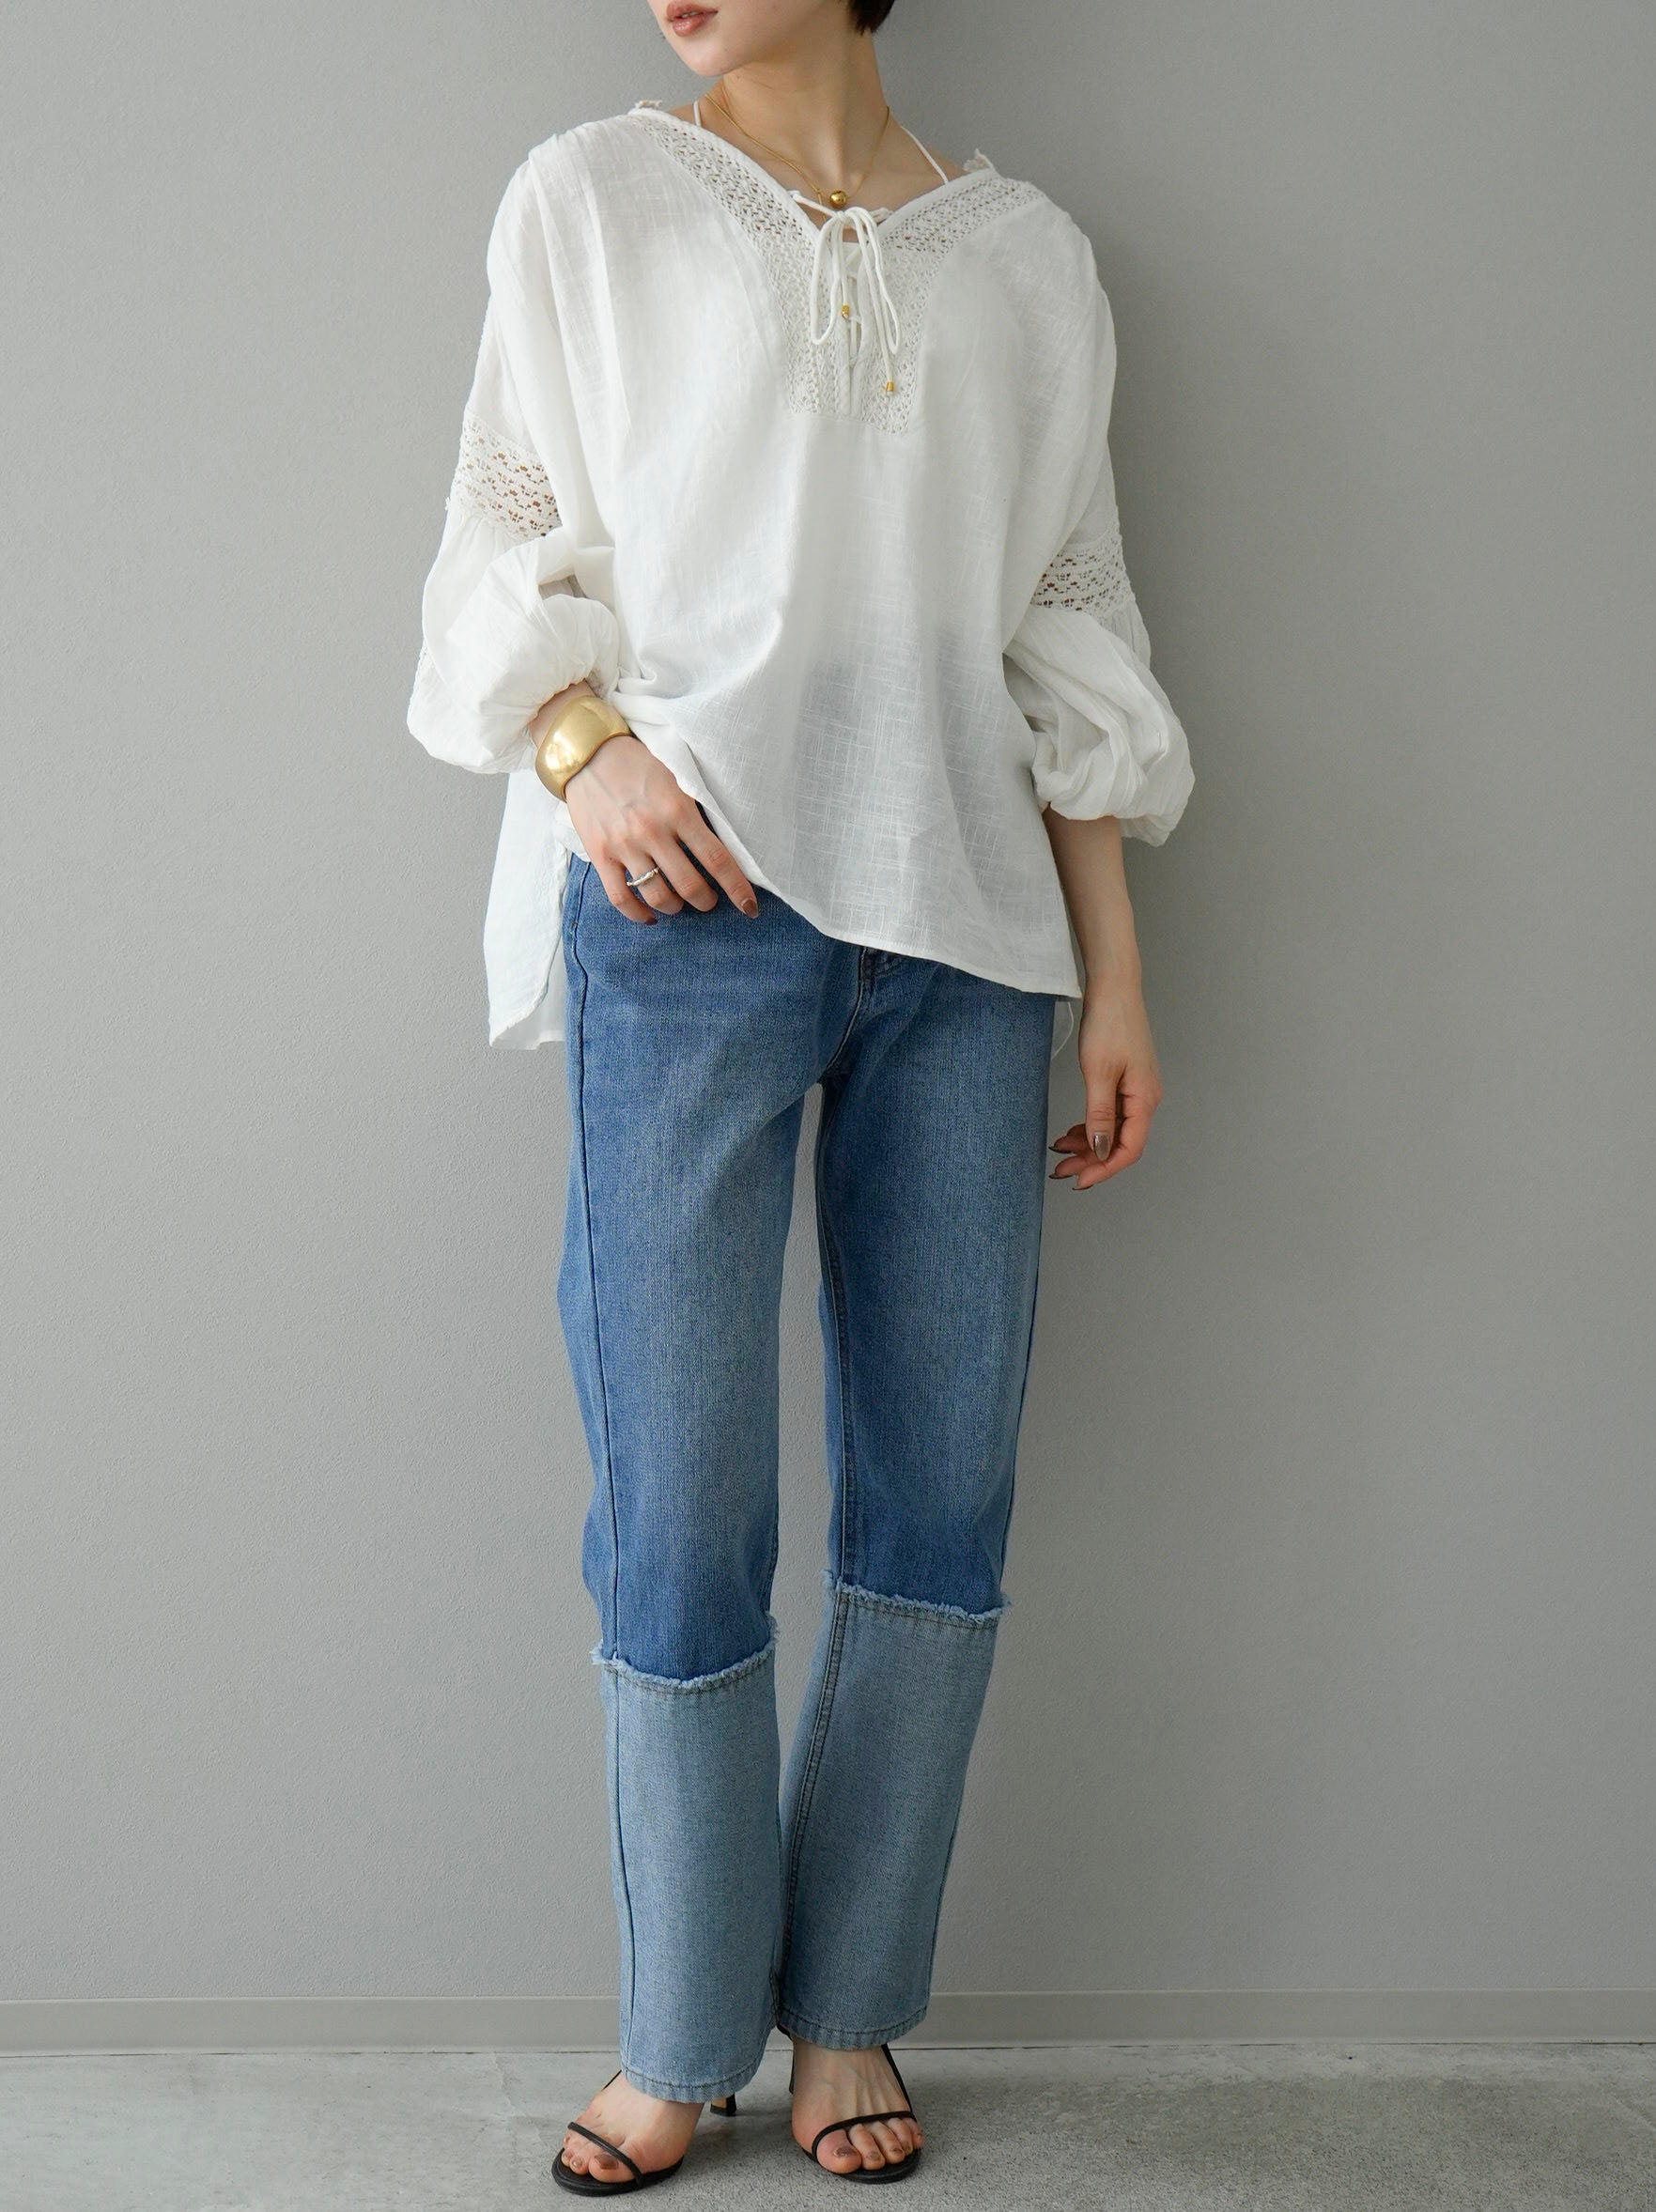 SET] Cotton lace blouse + fringe denim (2set) – Lumier